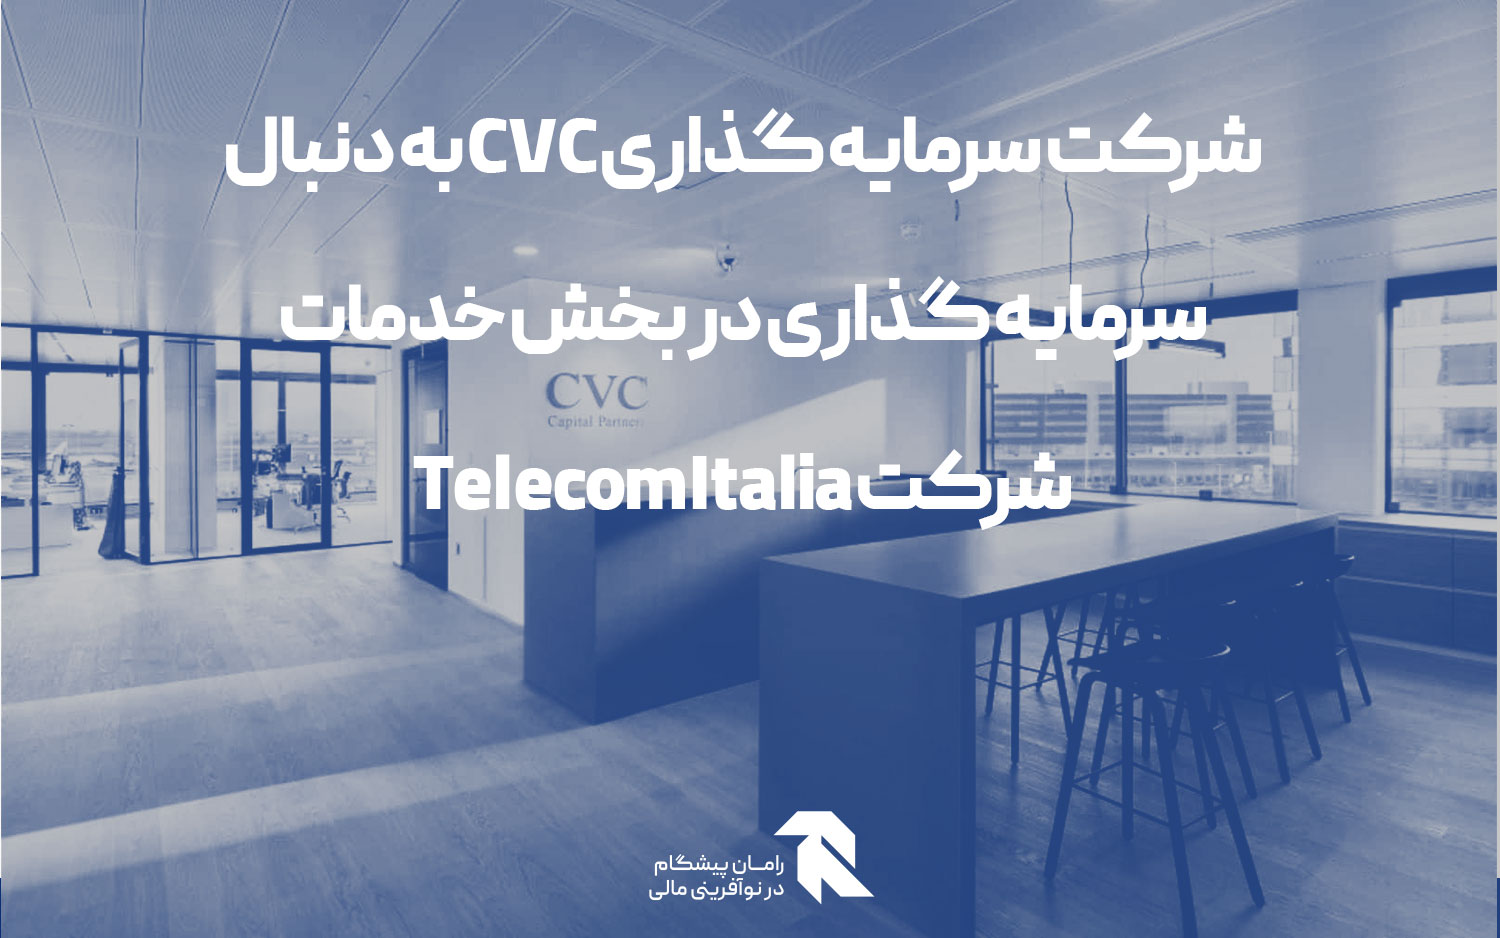 شرکت سرمایه گذاری CVC به دنبال سرمایه گذاری در بخش خدمات شرکت Telecom Italia